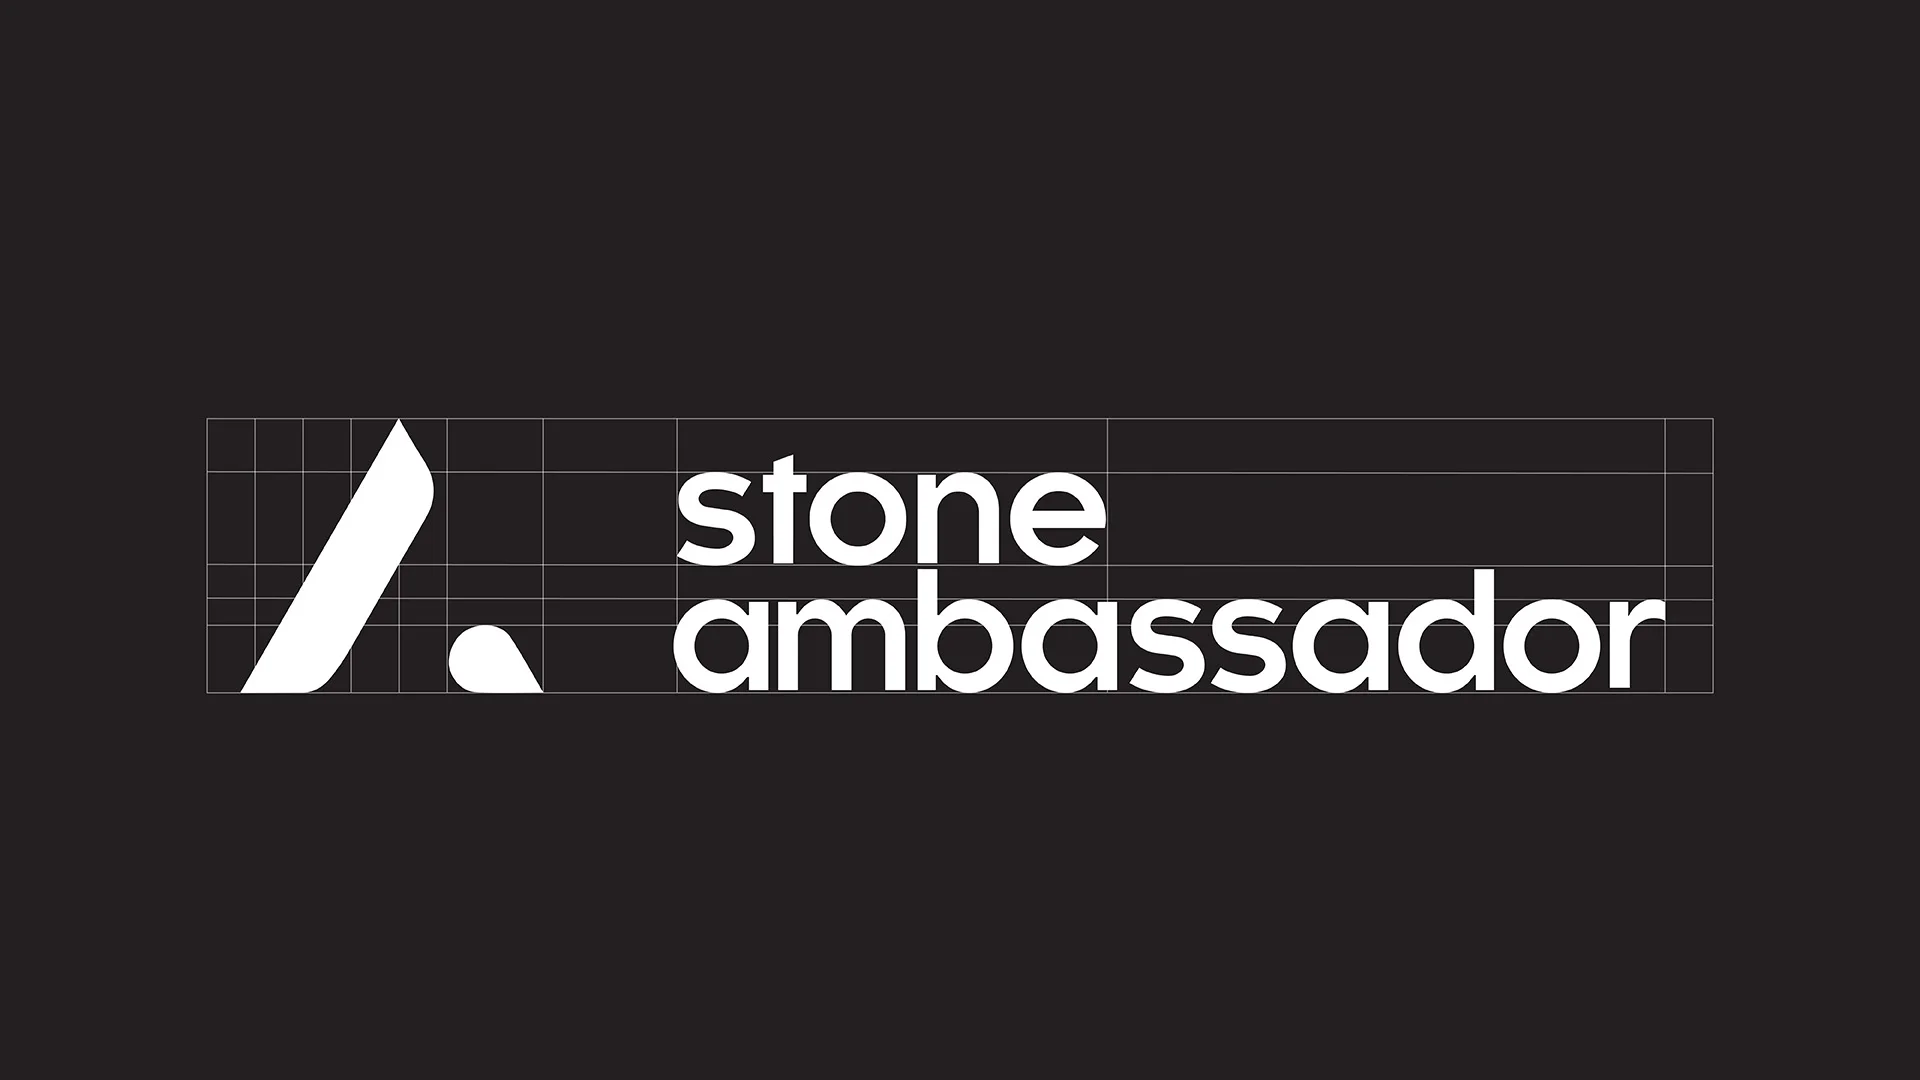 Stone Ambassador